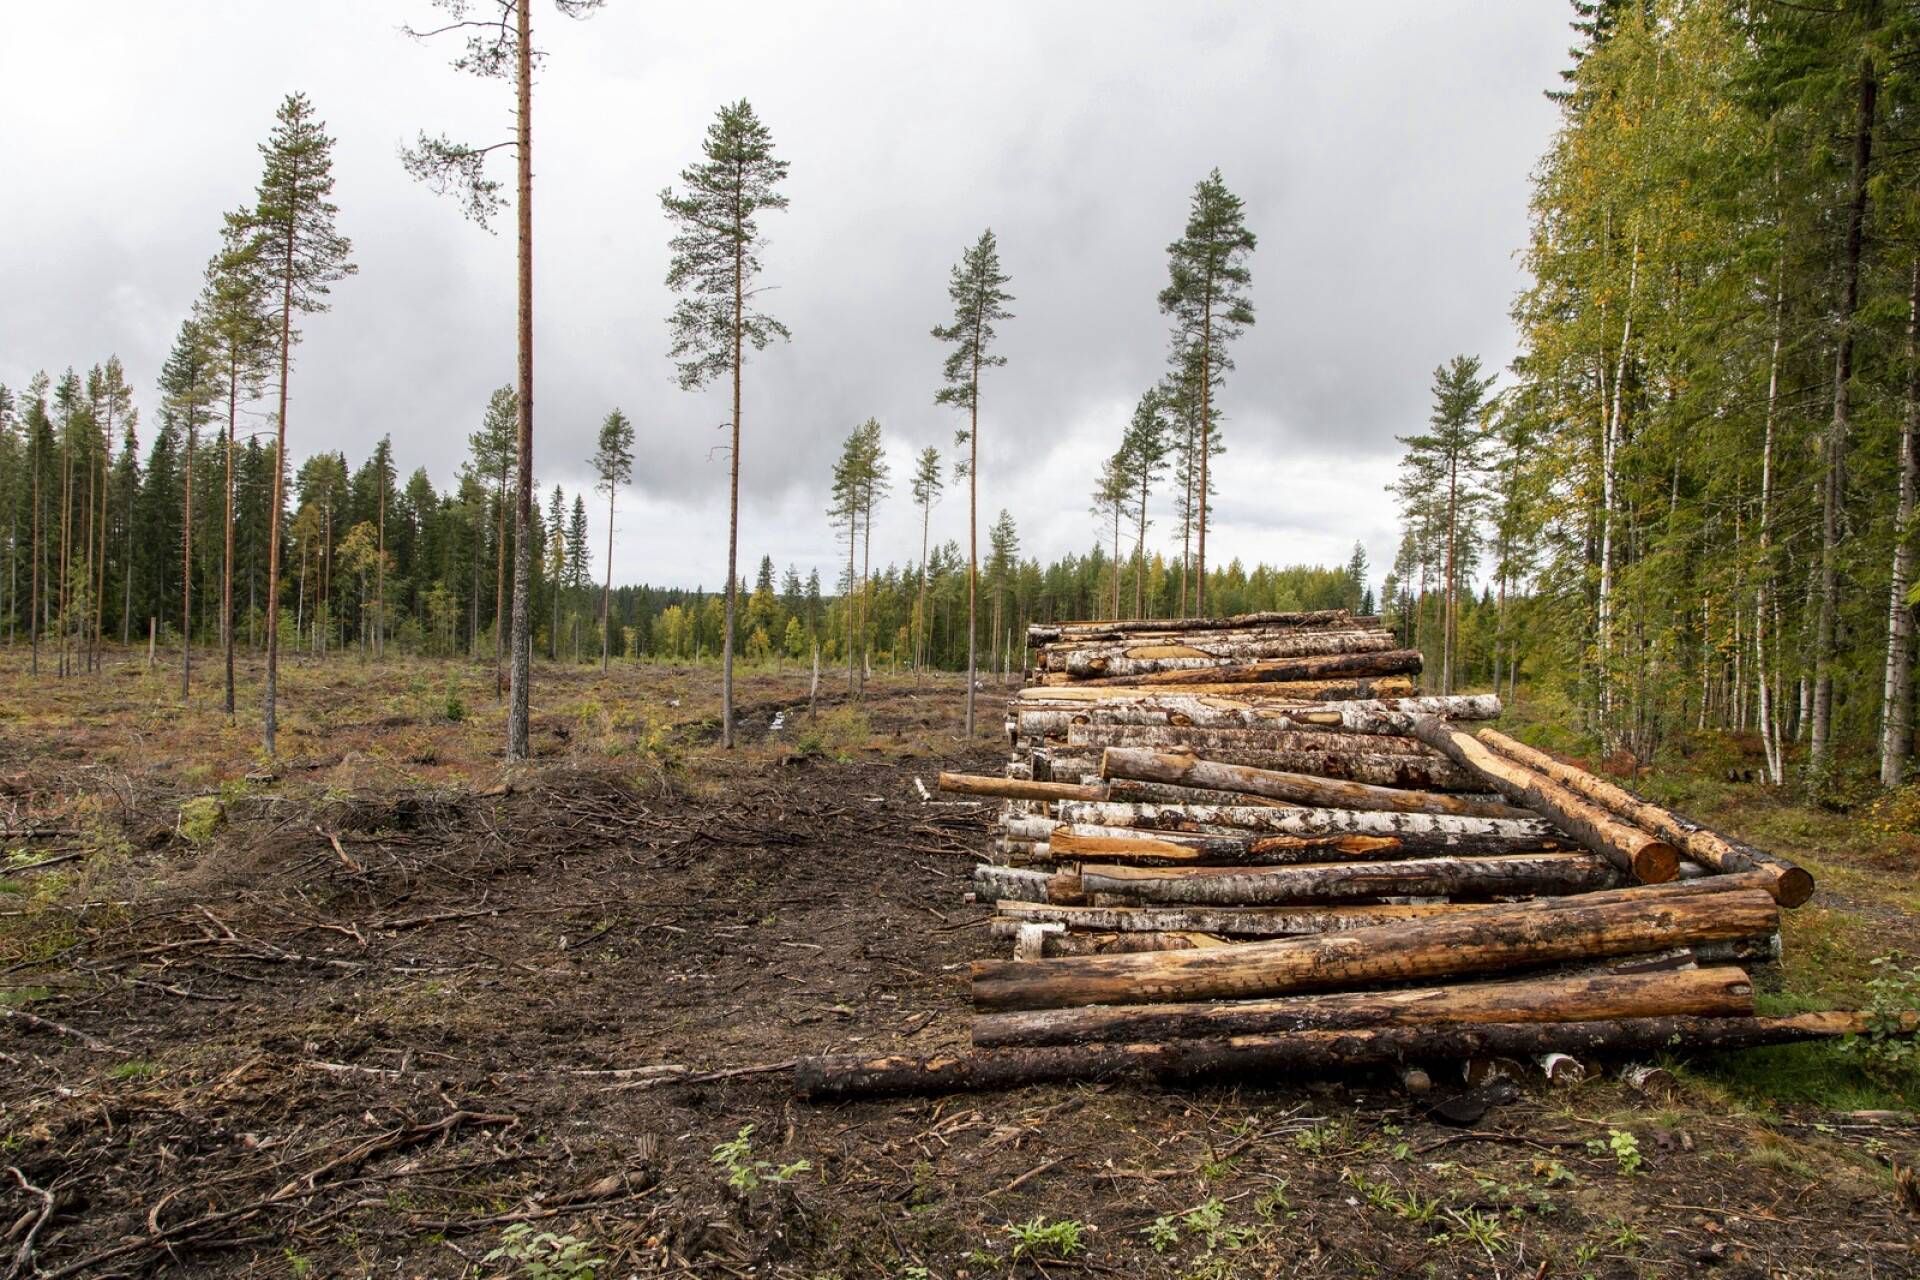 Suomessa hakattiin vuonna 2020 noin 70 miljoonaa kuutiometriä puuta. Hakkuuaukko Ylöjärven Kurussa.